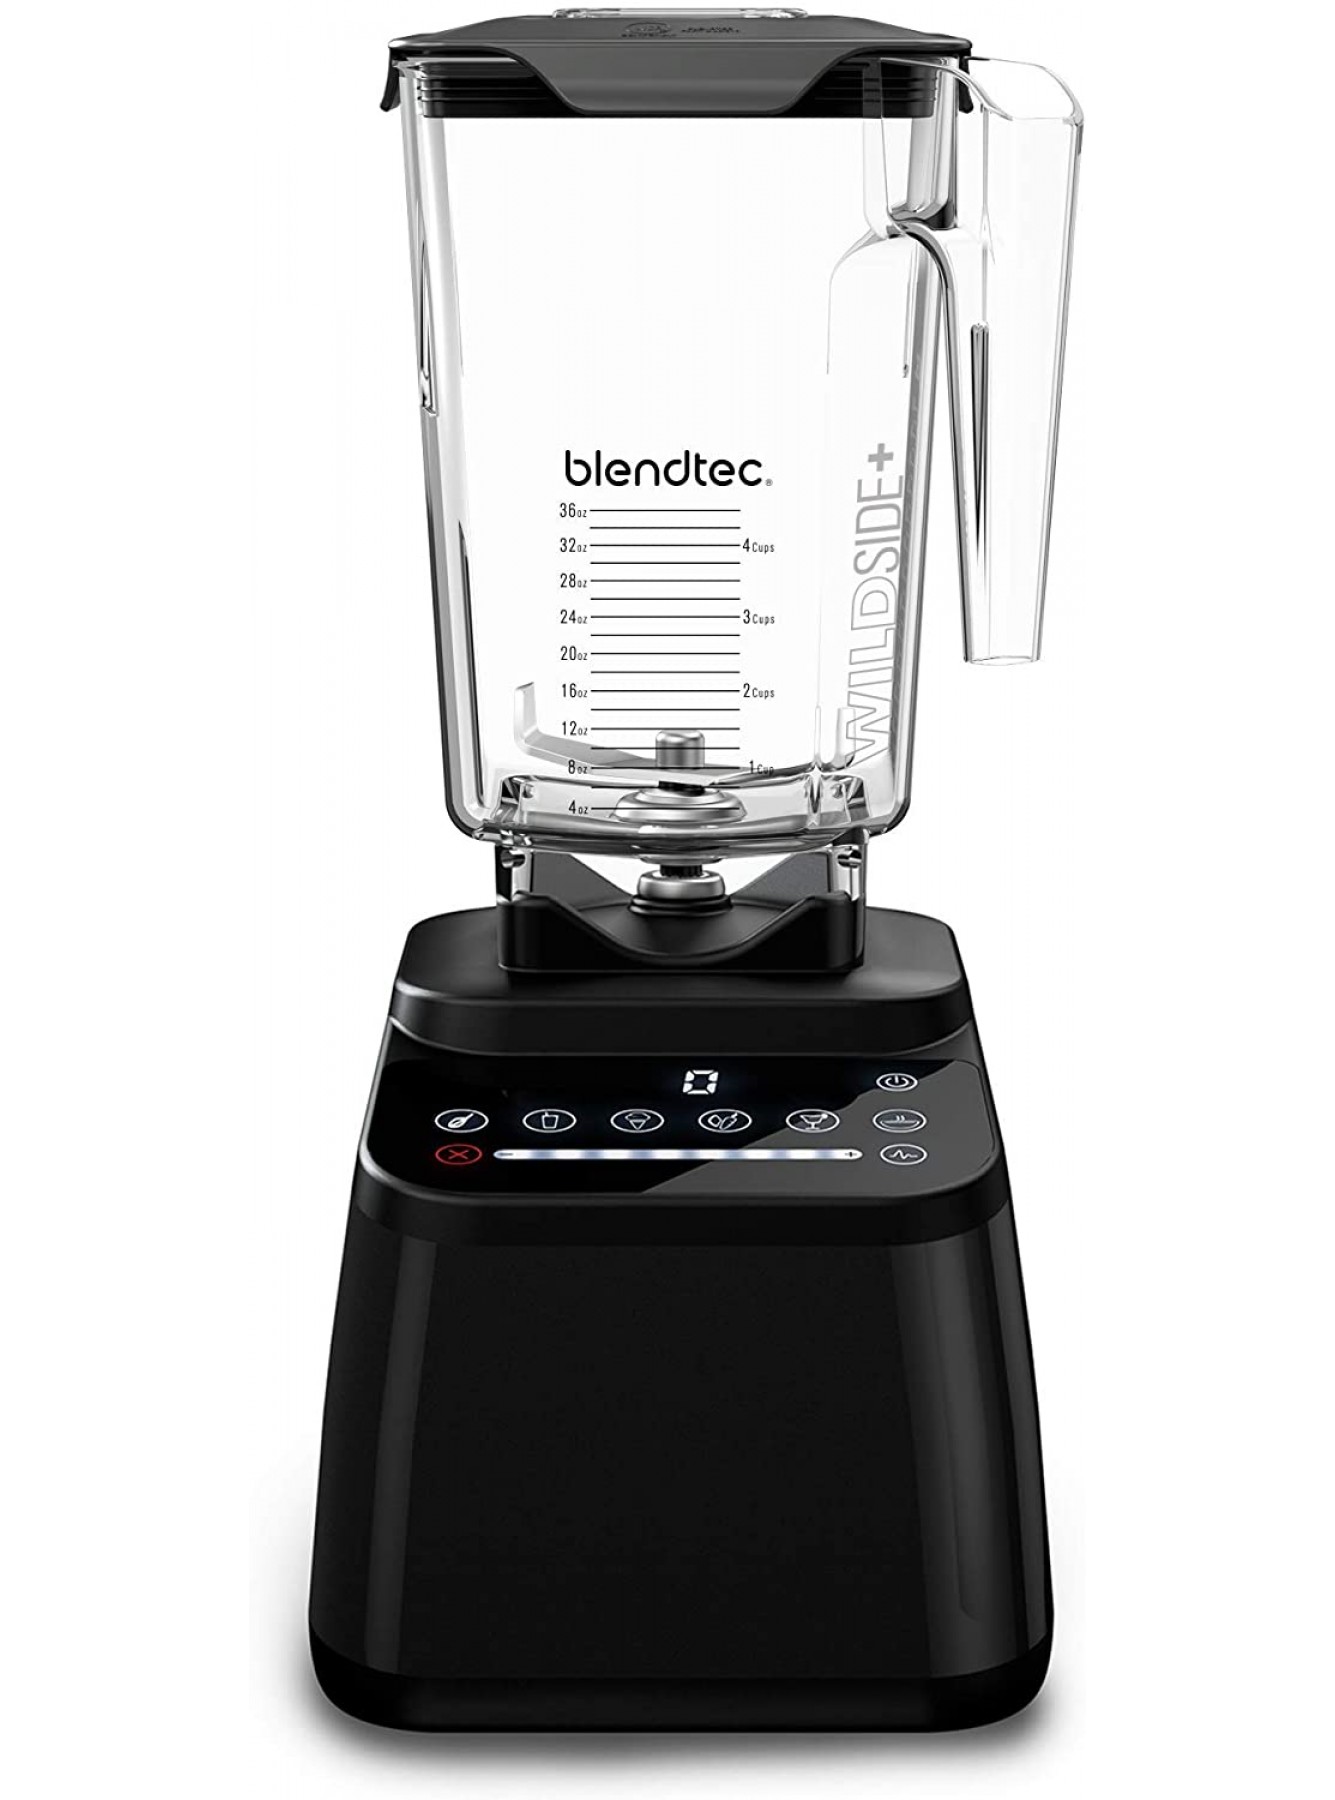 Blendtec Original Designer Series Blender and 90 oz WildSide+ Jar Kitchen Blender Bundle Black B008TVERZ6